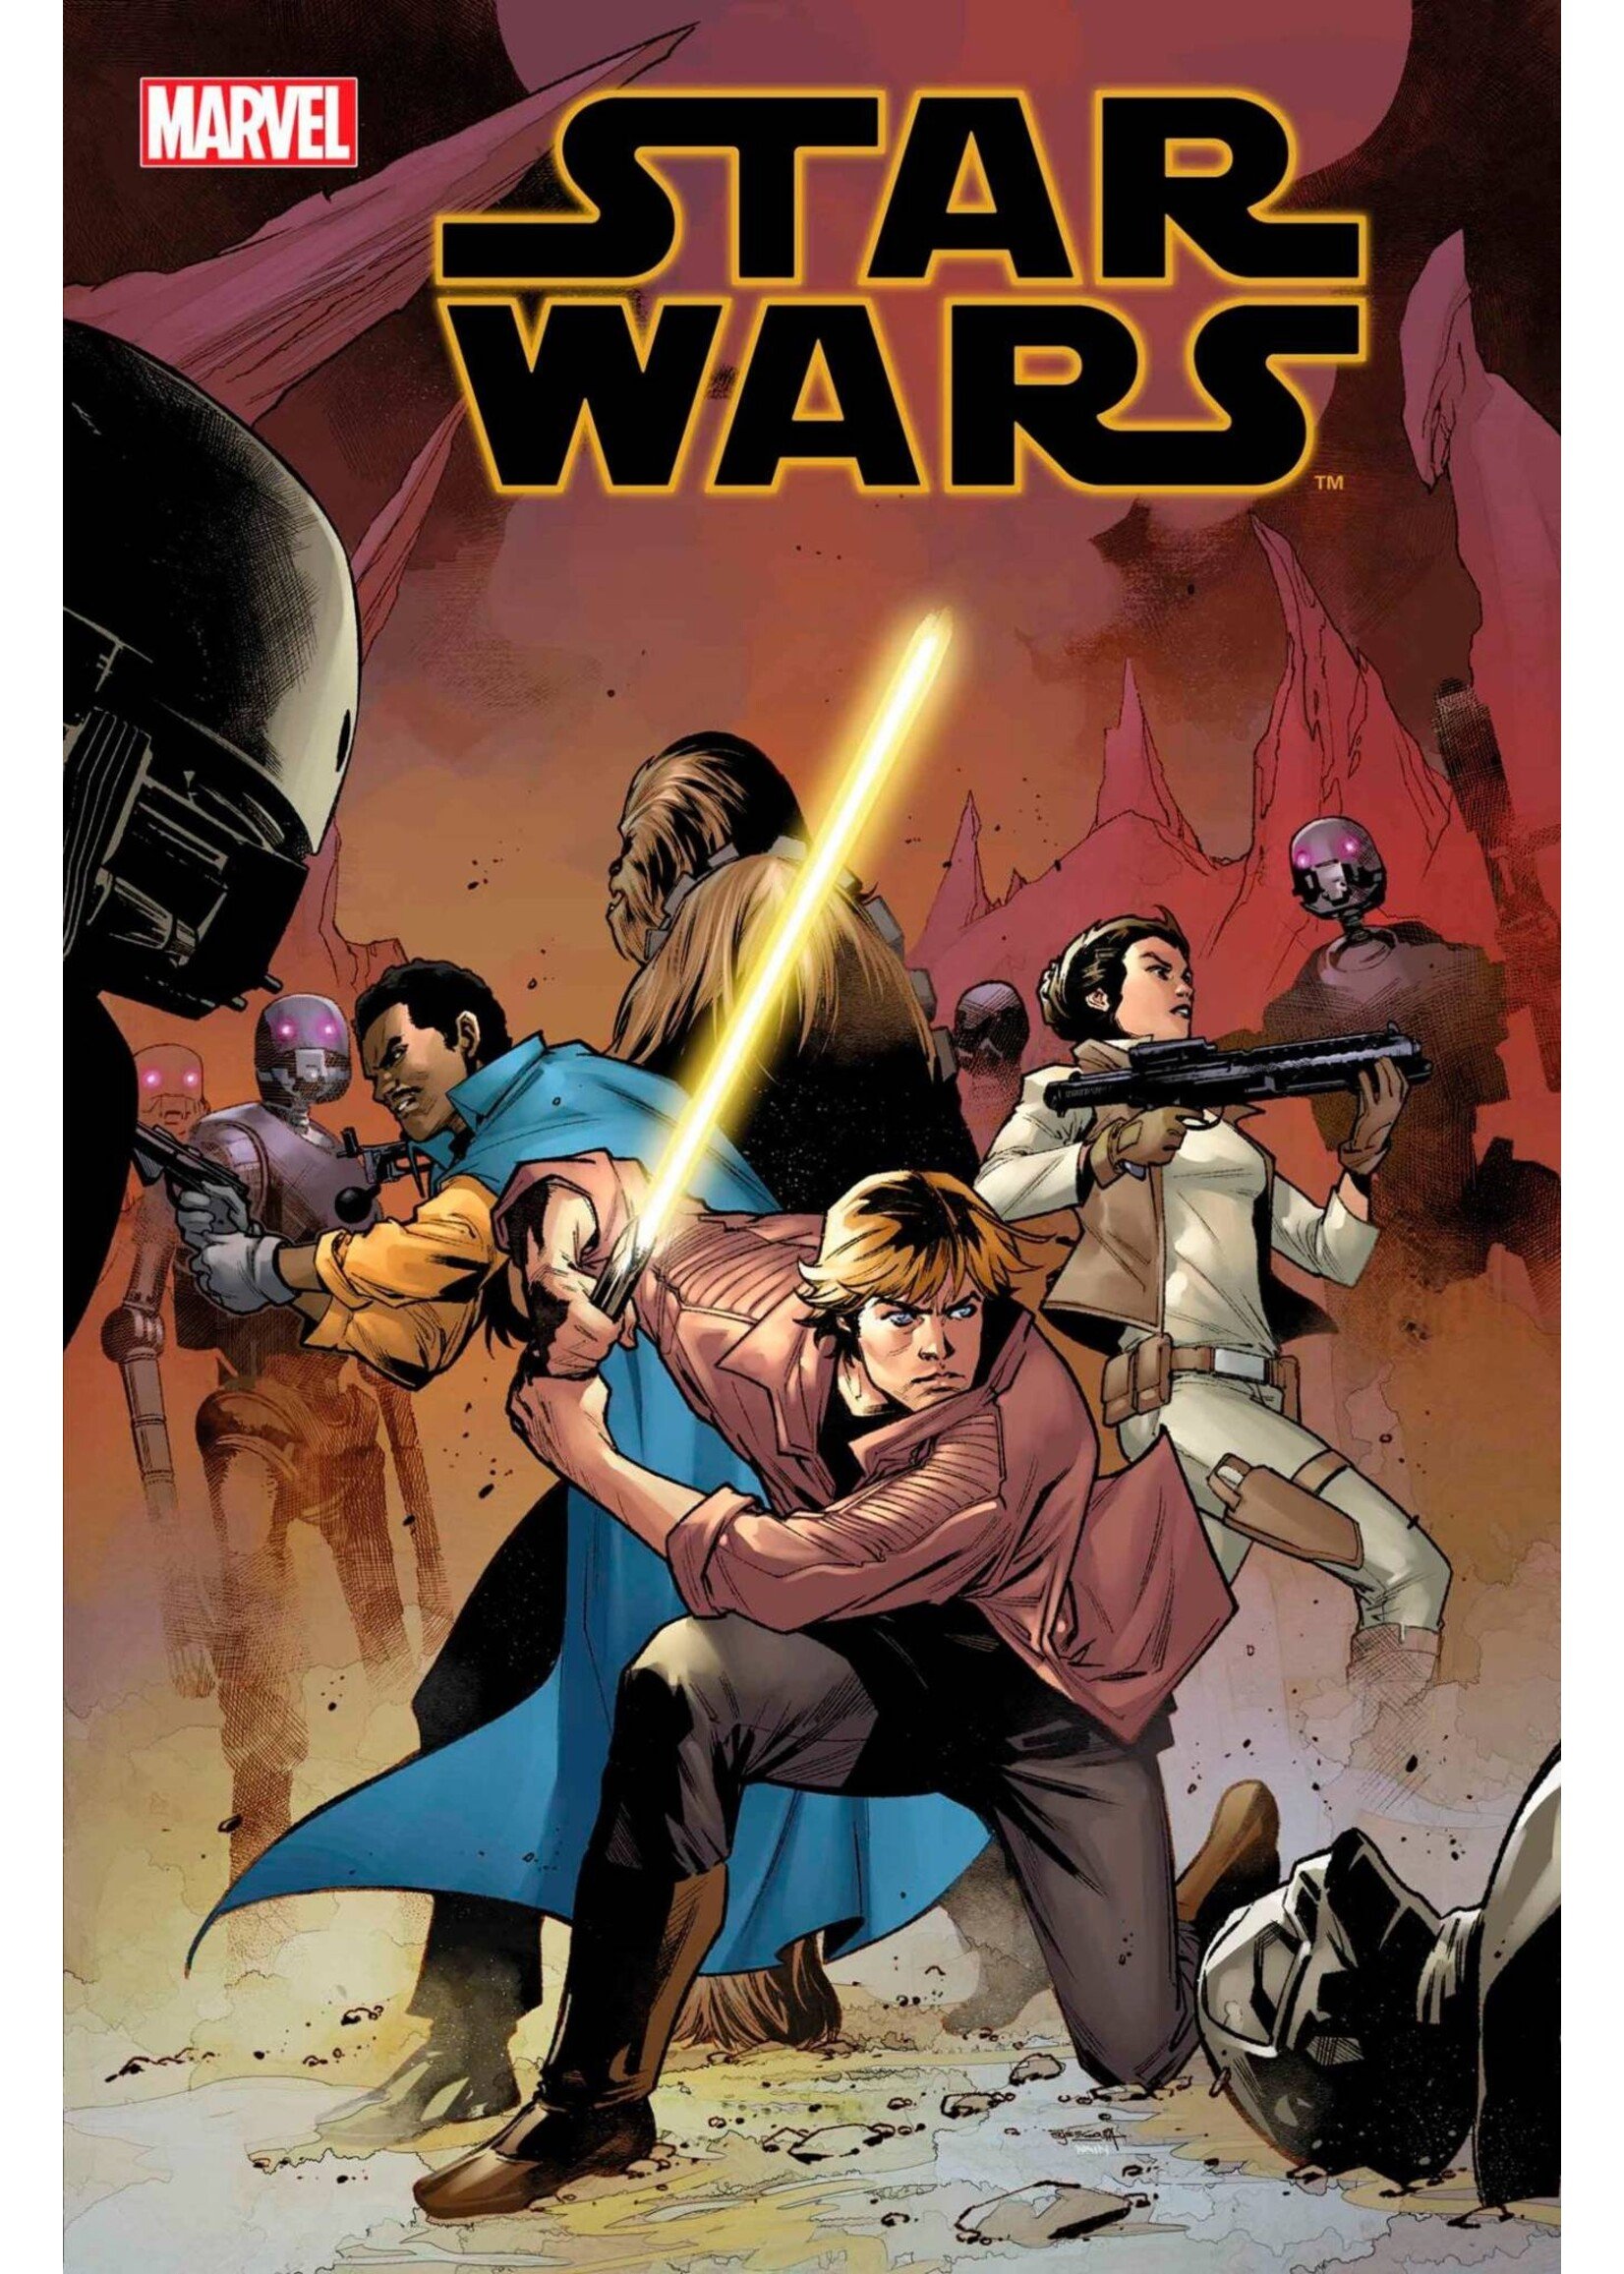 MARVEL COMICS STAR WARS #41